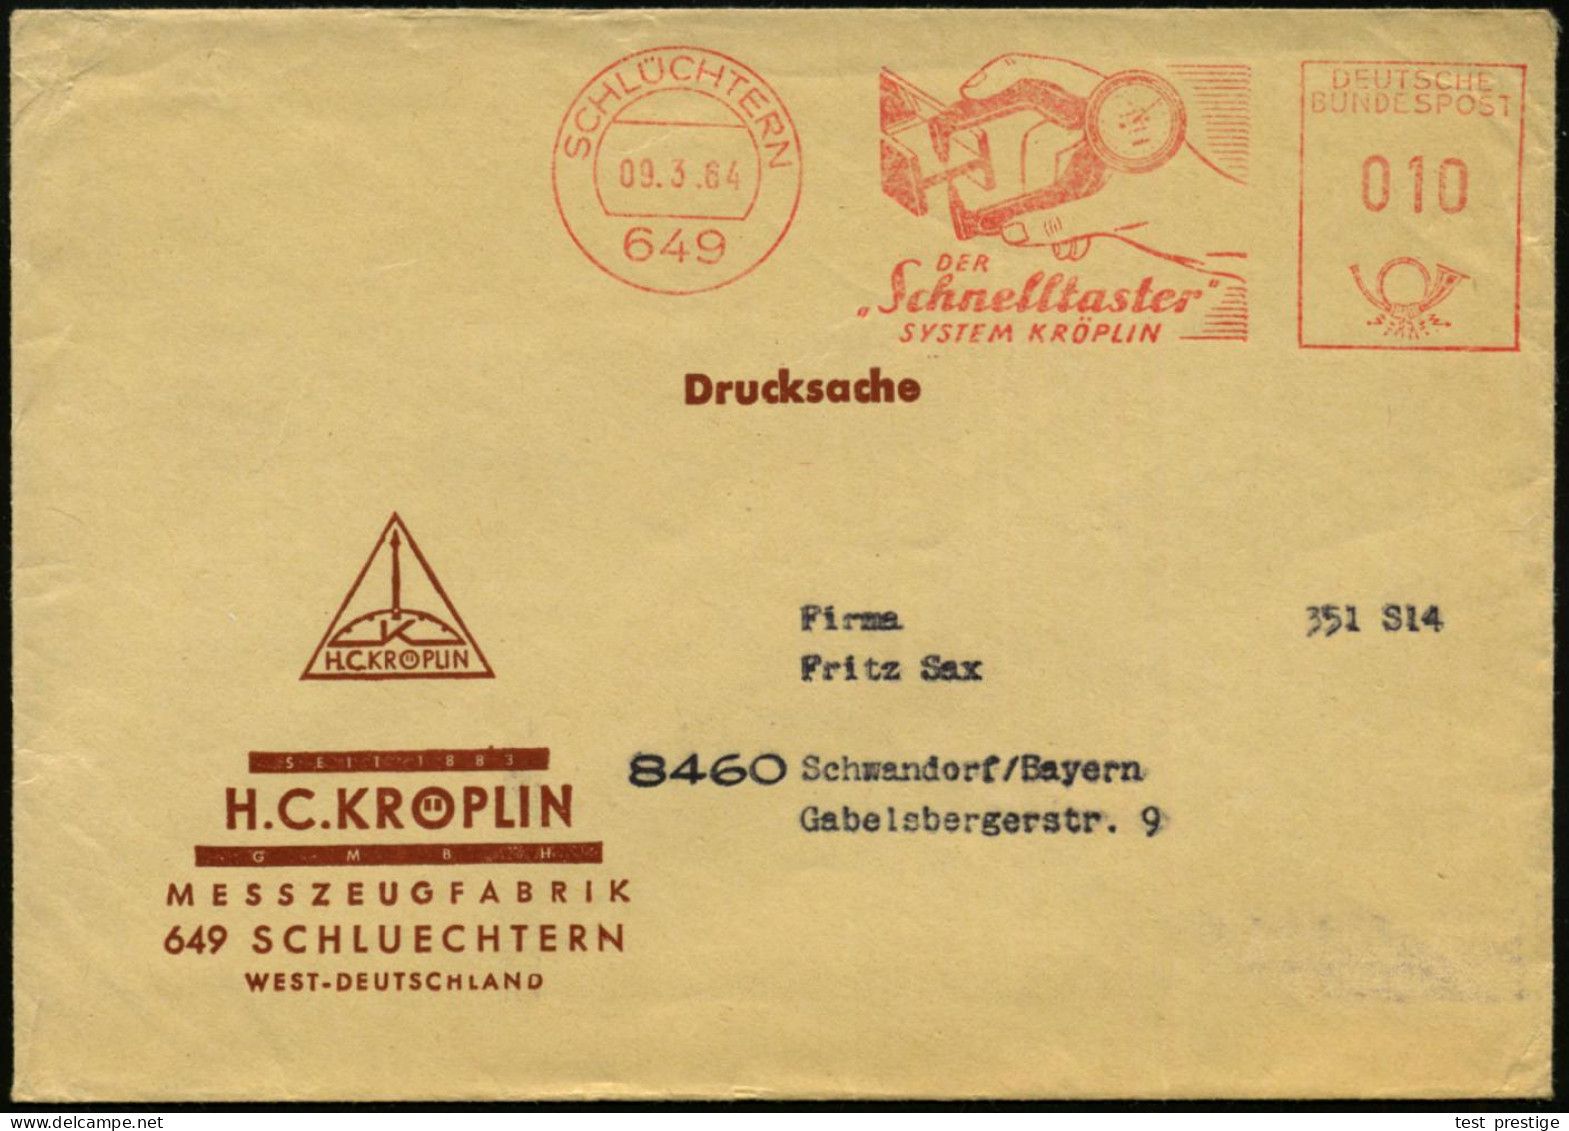 (16) SCHLÜCHTERN/ DER "Schnelltaster"/ SYSTEM KRÖPELIN 1964 (9.3.) AFS = Feinmeßgerät (für Material-Durchmesser), Dekora - Other